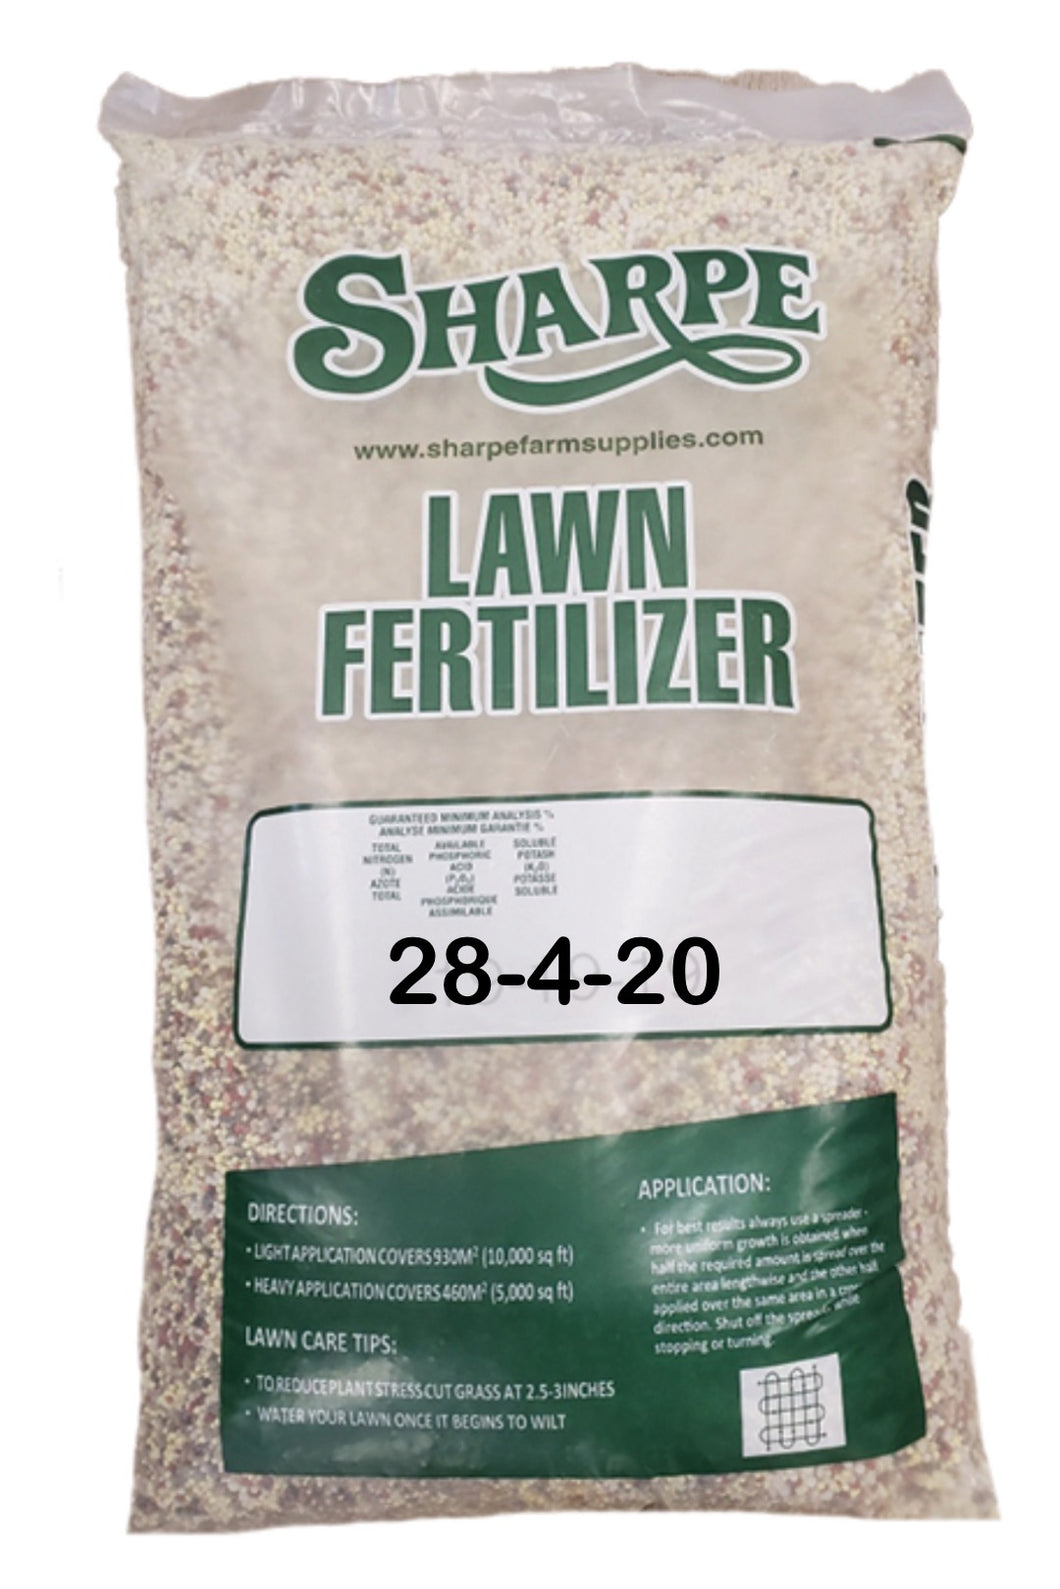 Sharpe Lawn Fertilizer 8-4-20 50% SCU + 5.2S + 2Mg. 25kg